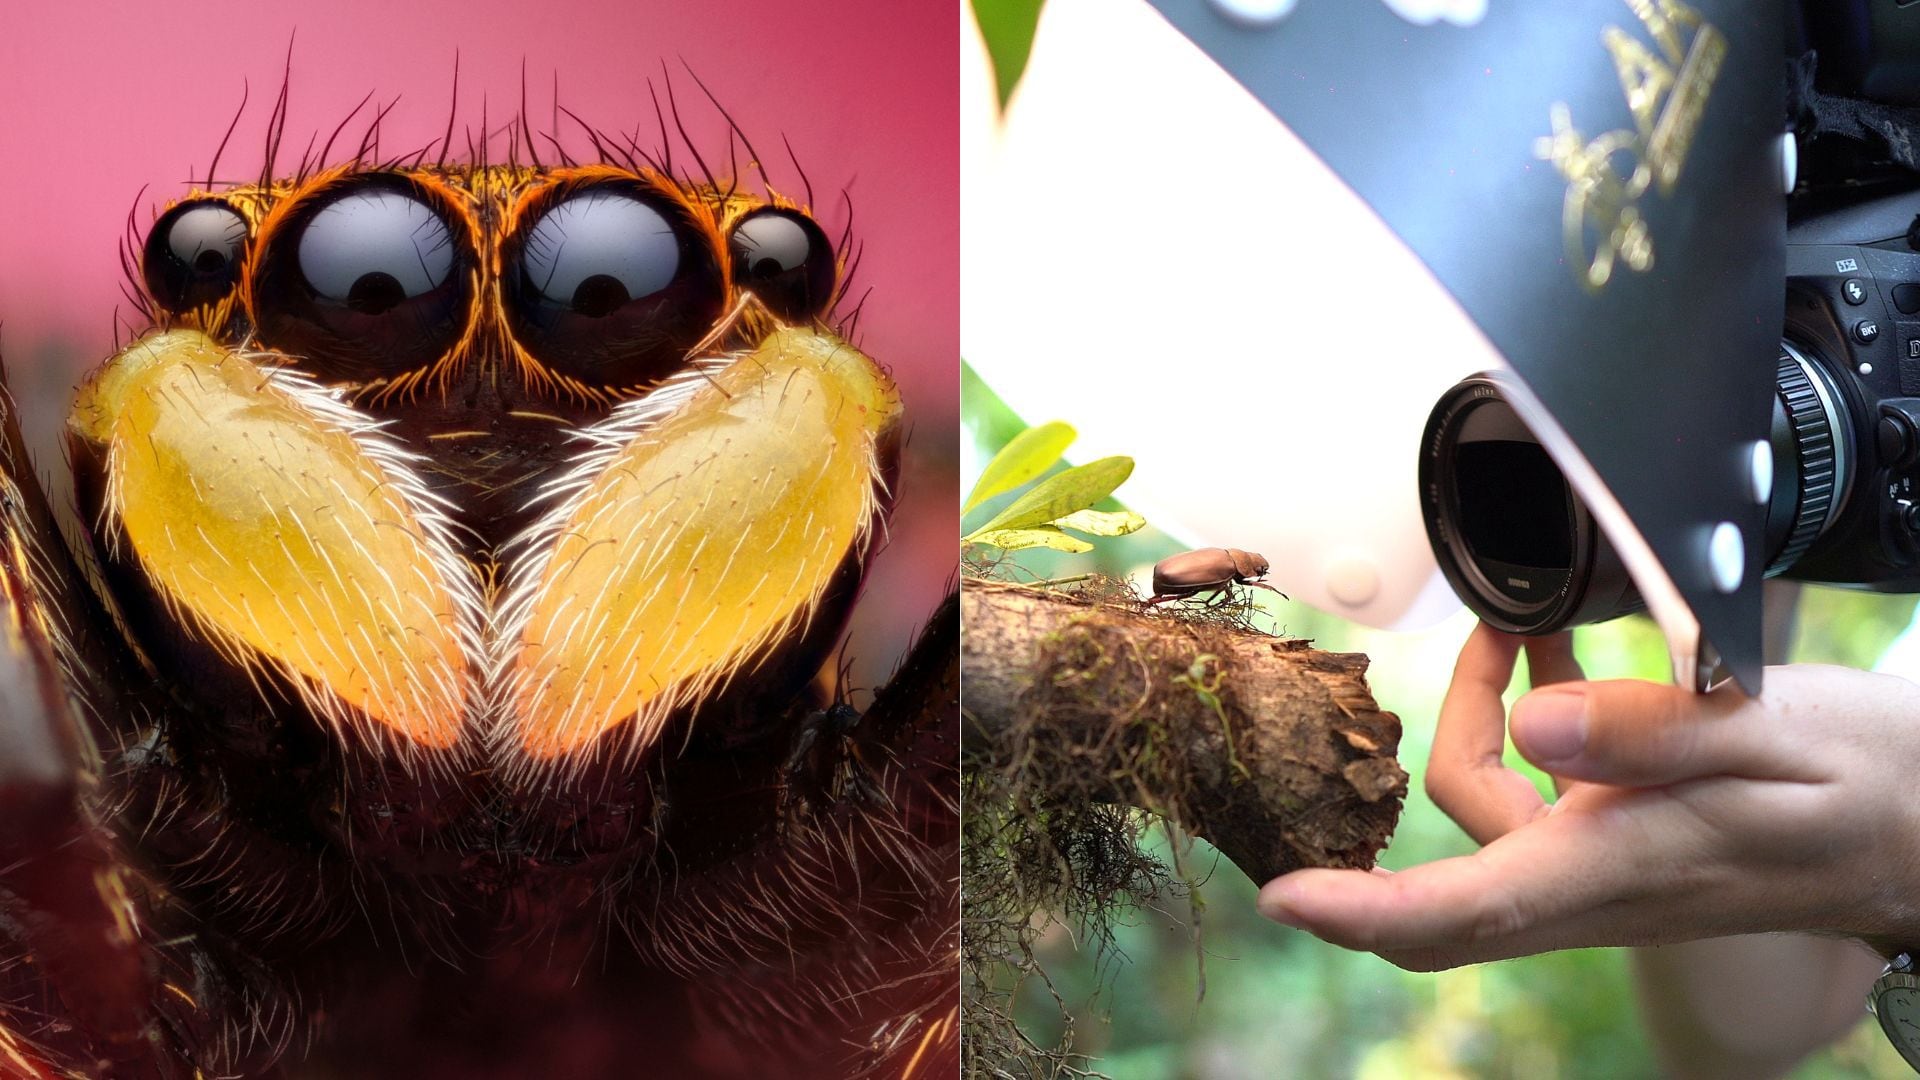 Peter Media captura a los animales en su hábitat natural, sin perturbarlos o causarles daños. En la foto izquierda, el retrato de una araña saltadora sobre una flor, y en la derecha el productor audiovisual fotografiando un escarabajo.